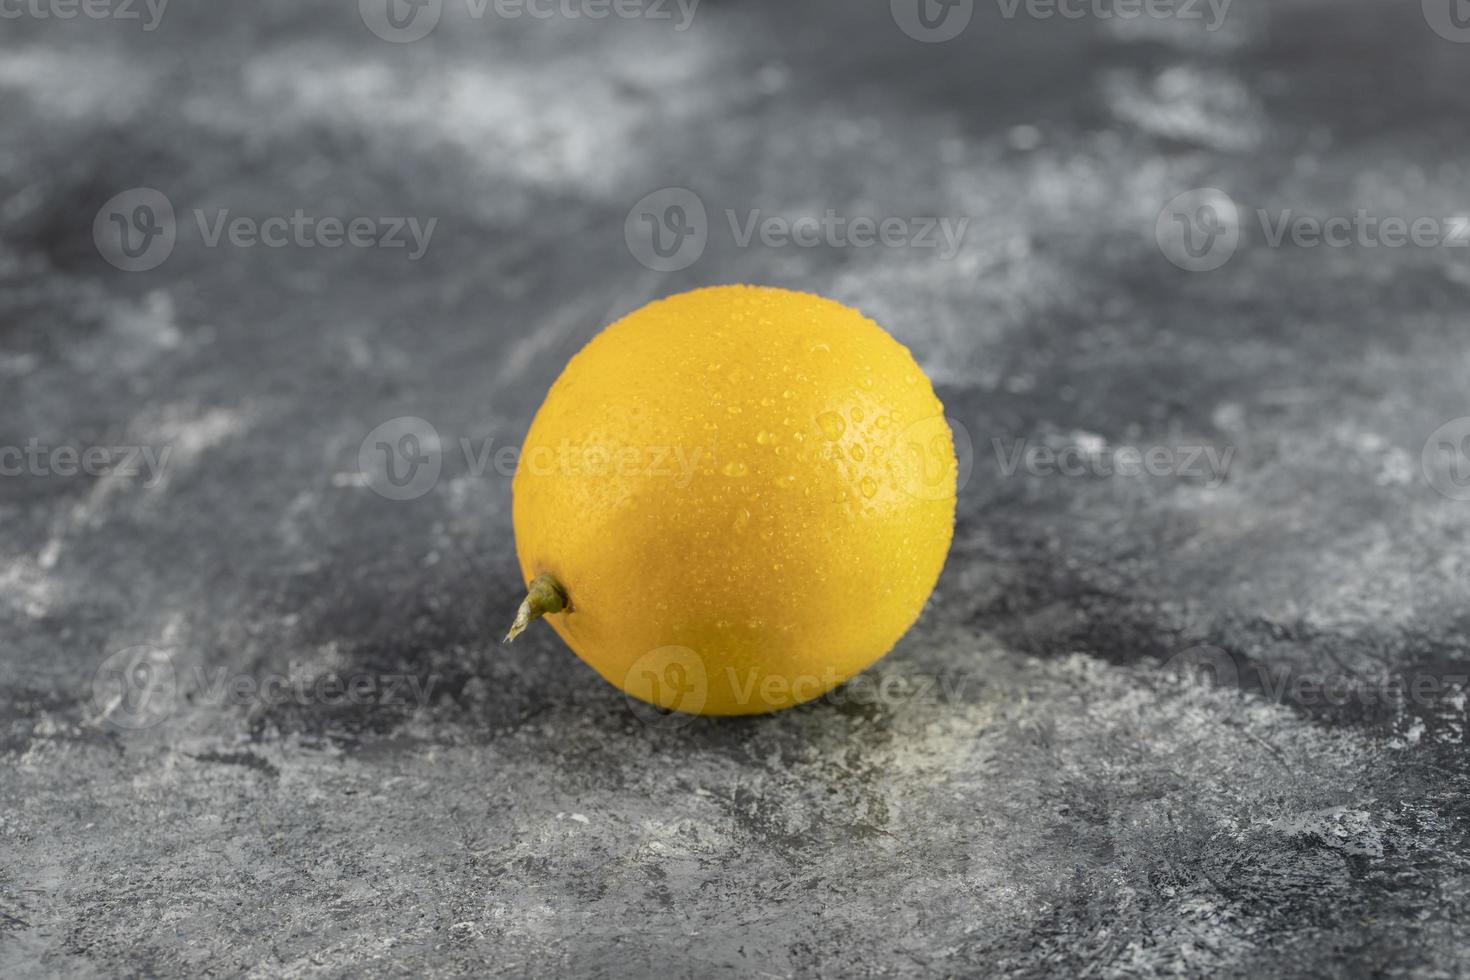 eine gelbe reife Zitrone auf einem Marmorhintergrund foto